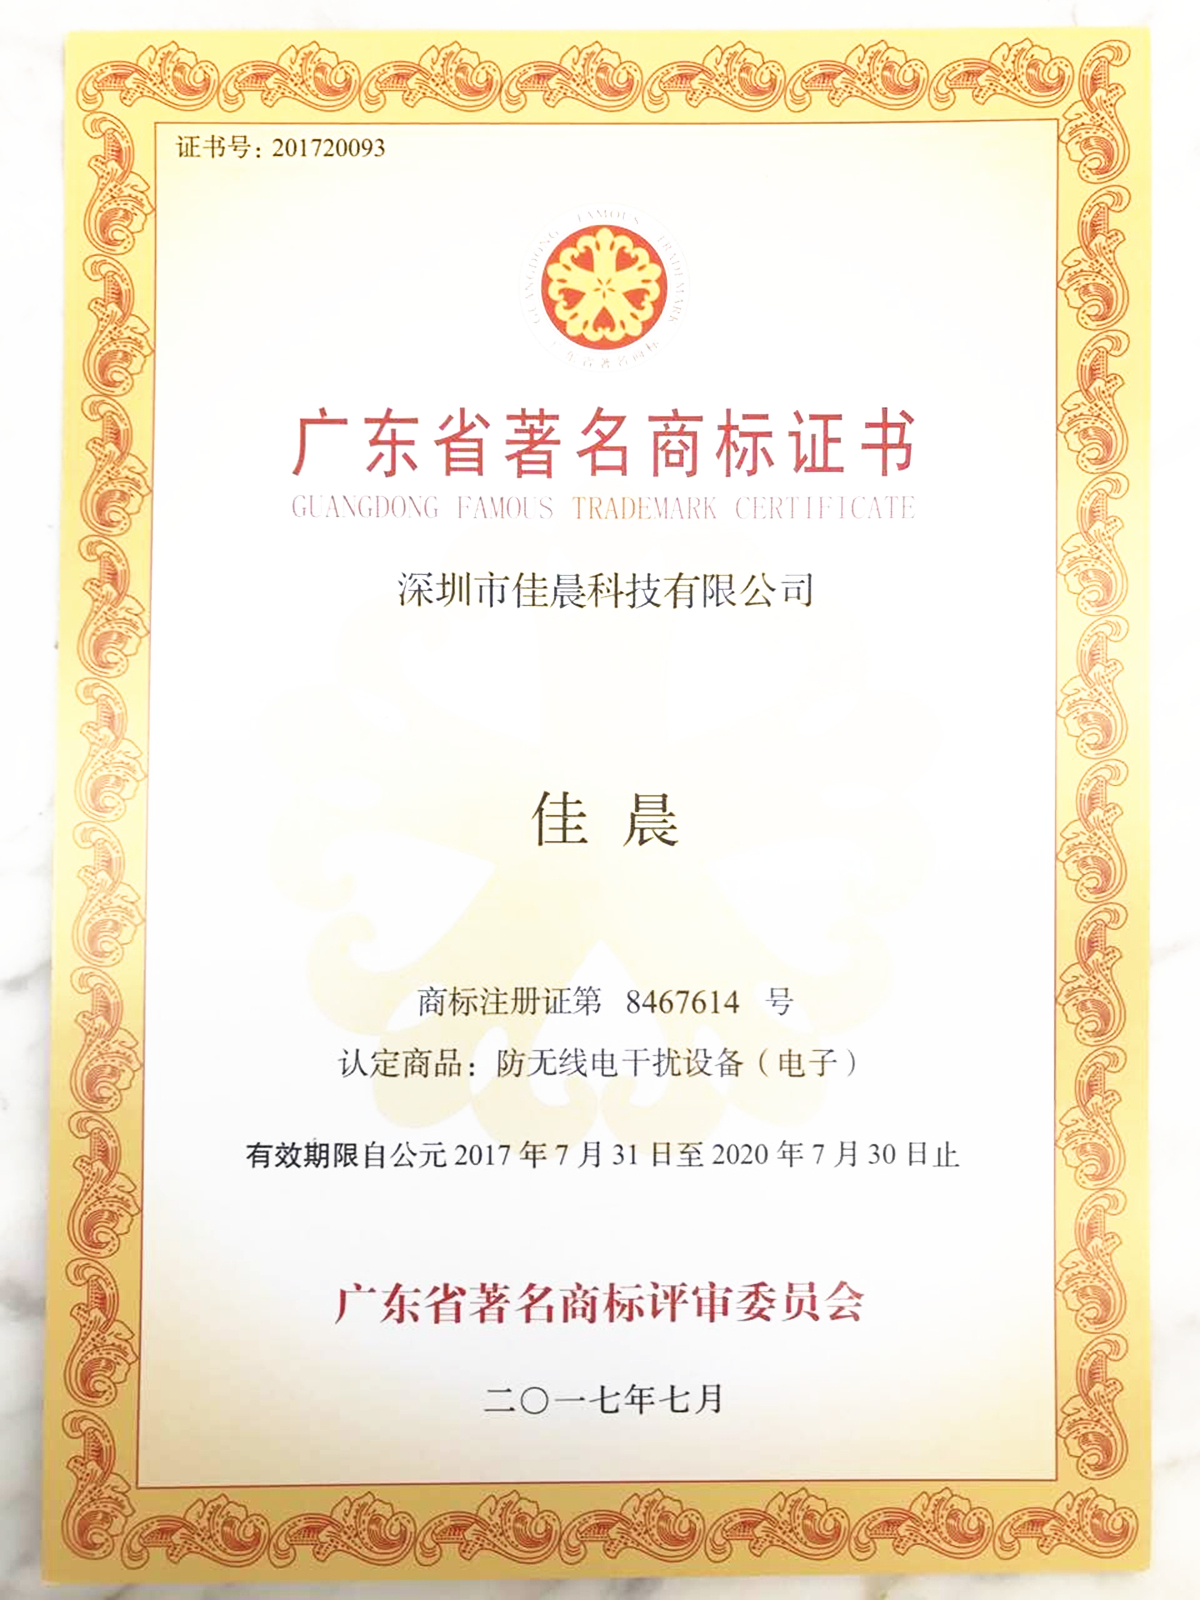 Jiachen technology famous trademark certificate